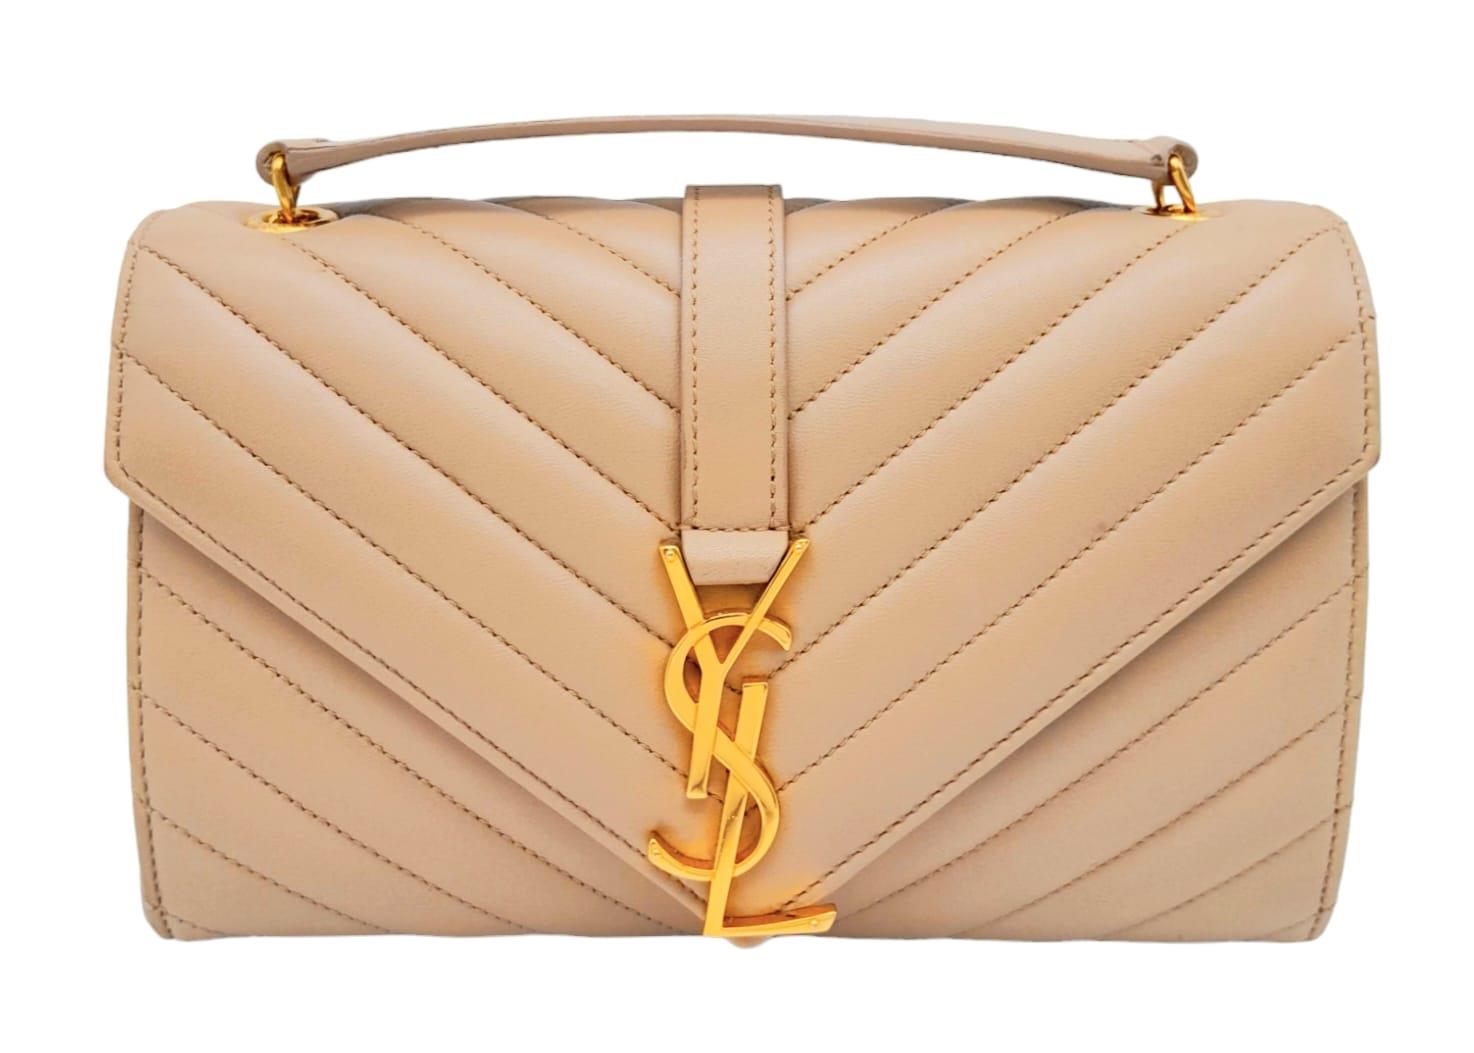 A Saint Laurent envelope shoulder bag, soft beige calfskin with gold hardware and strap, press - Image 2 of 11